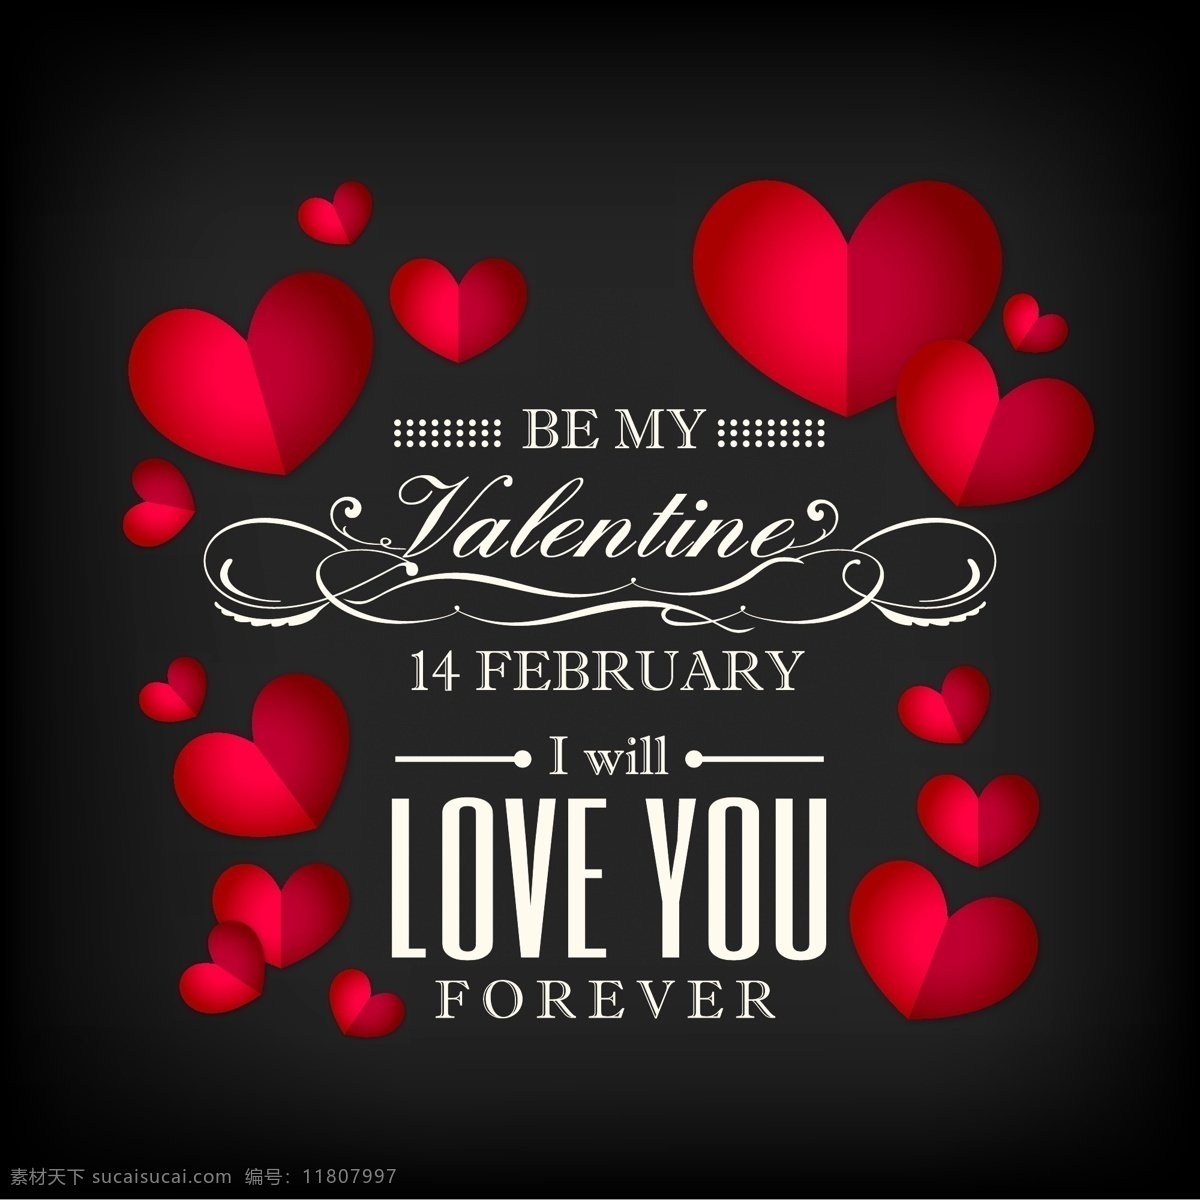 红心 情人卡 背景 心 爱 情人节 庆祝 情侣 浪漫 美丽 丘比特 二月 在爱情 14月2日